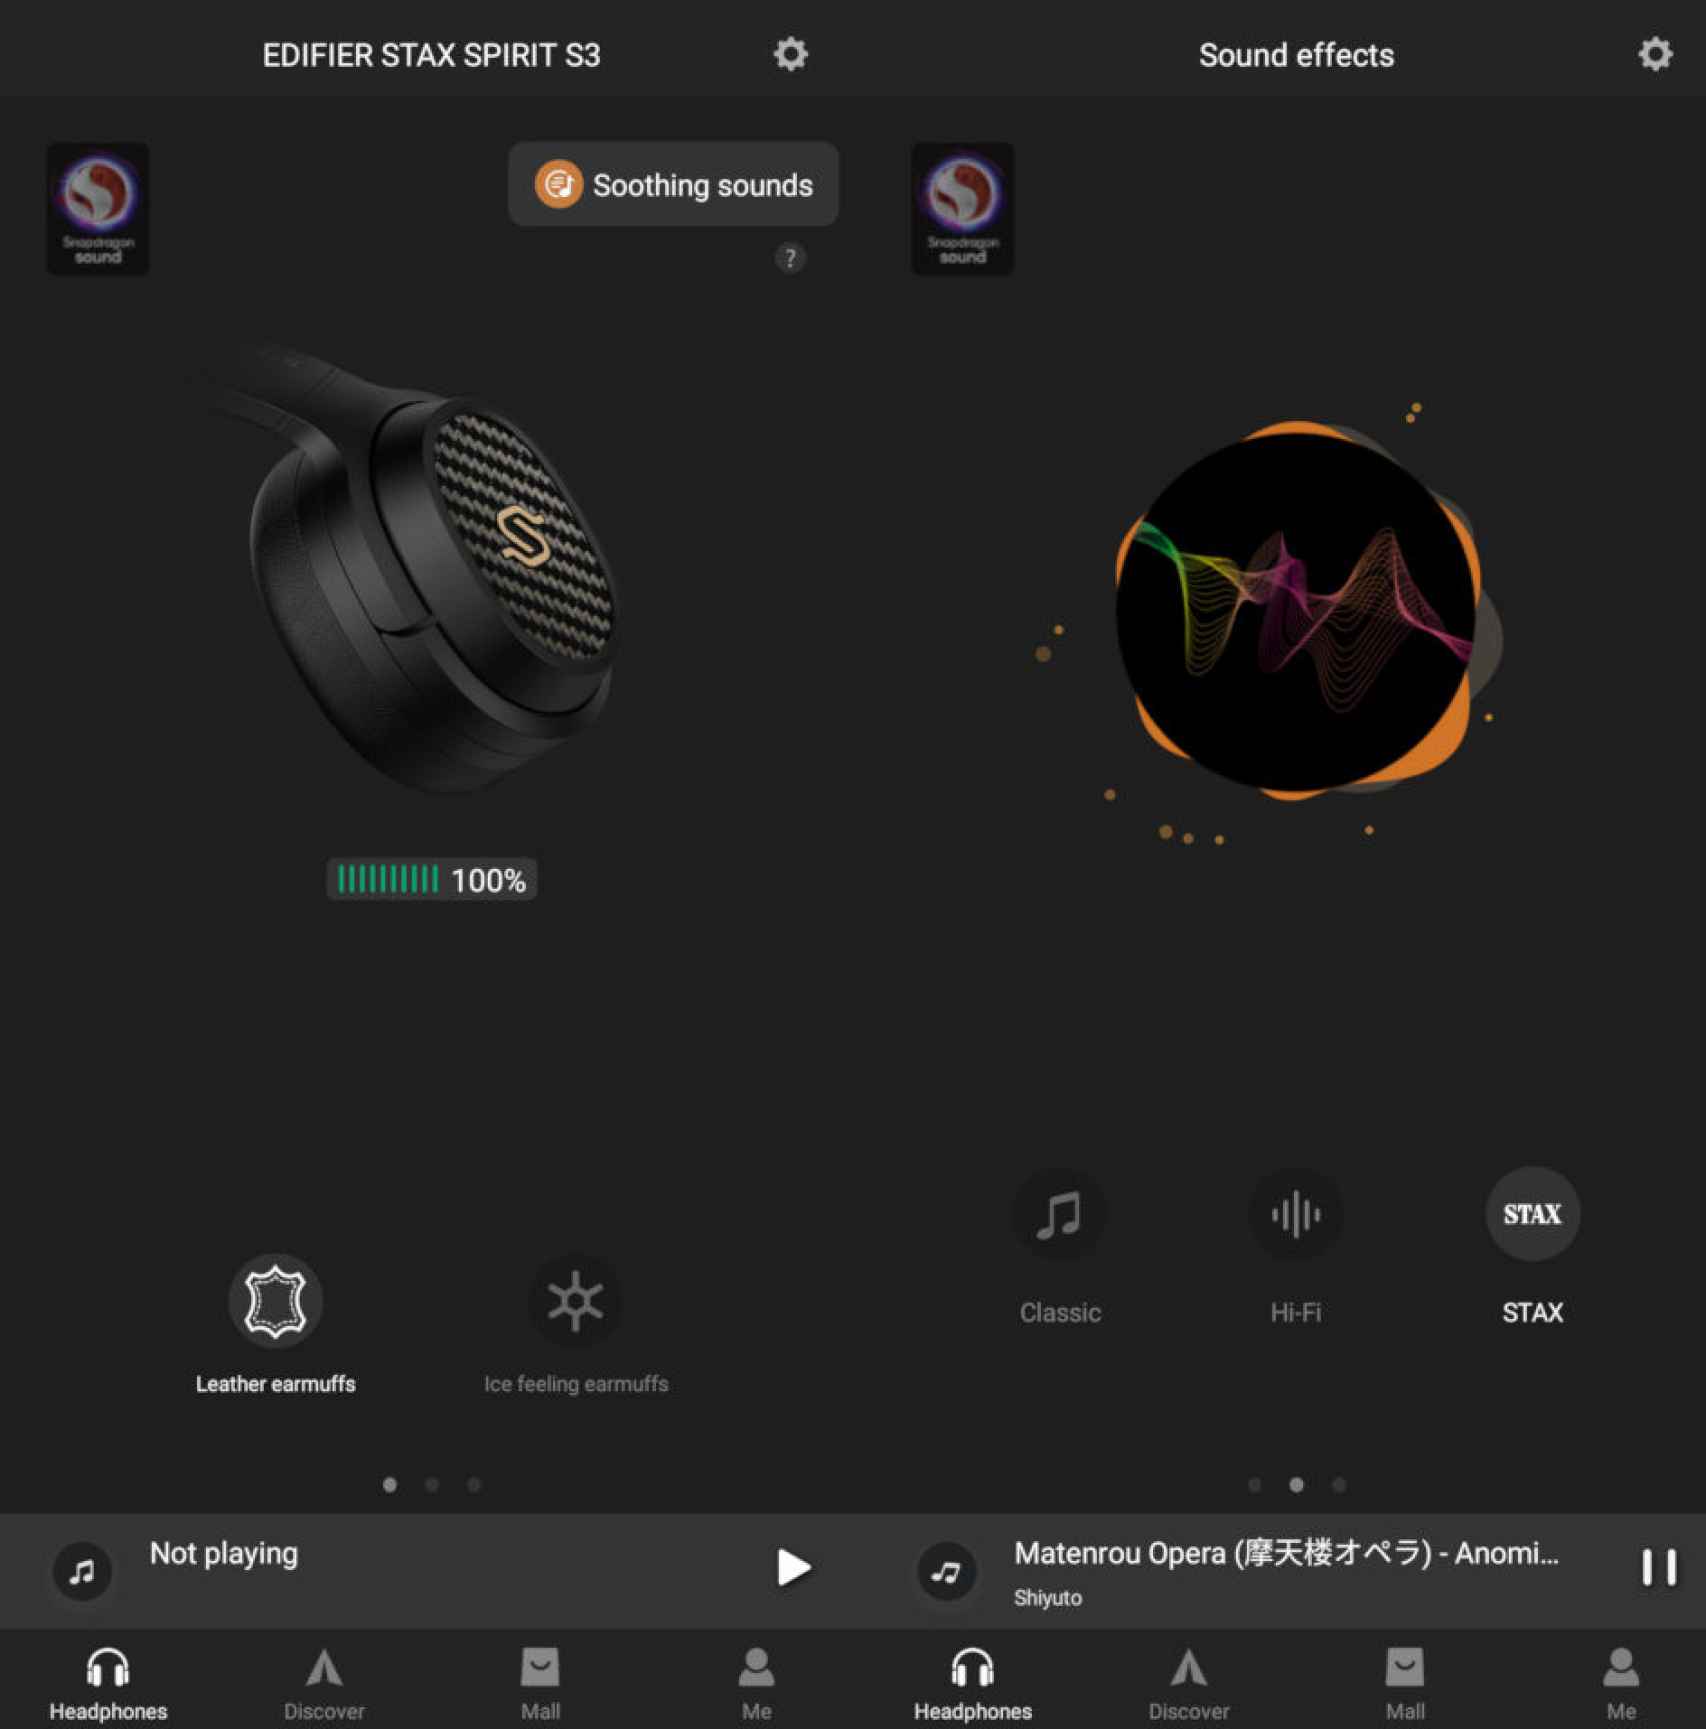 La app de Edifier permite cambiar el sonido de los S3 a nuestro gusto